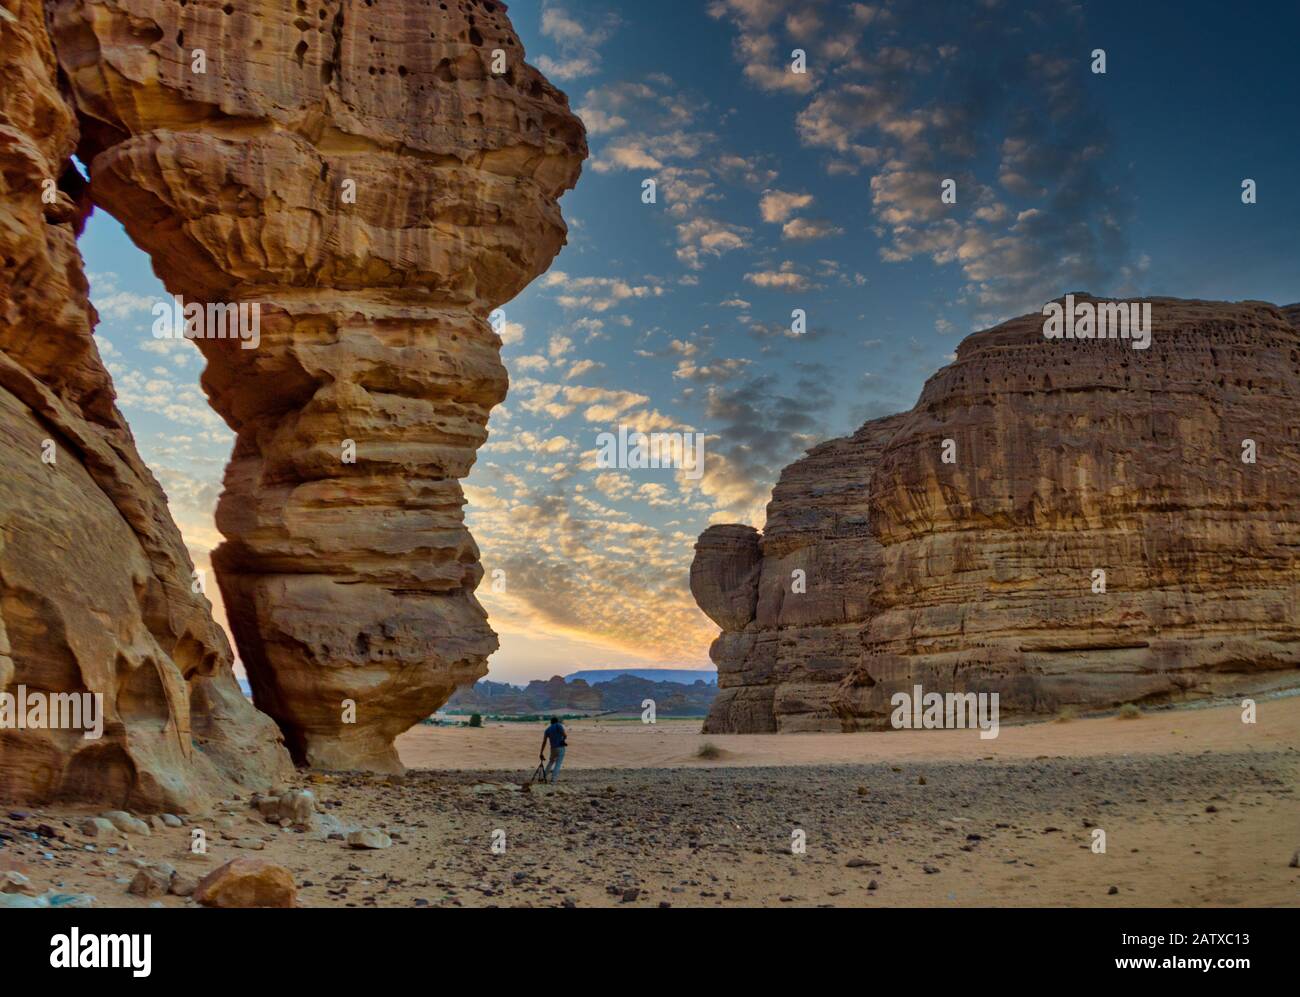 La beauté de la formation de roche de Madain saleh, rock dans la région d'Al Ula en Arabie Saoudite Banque D'Images